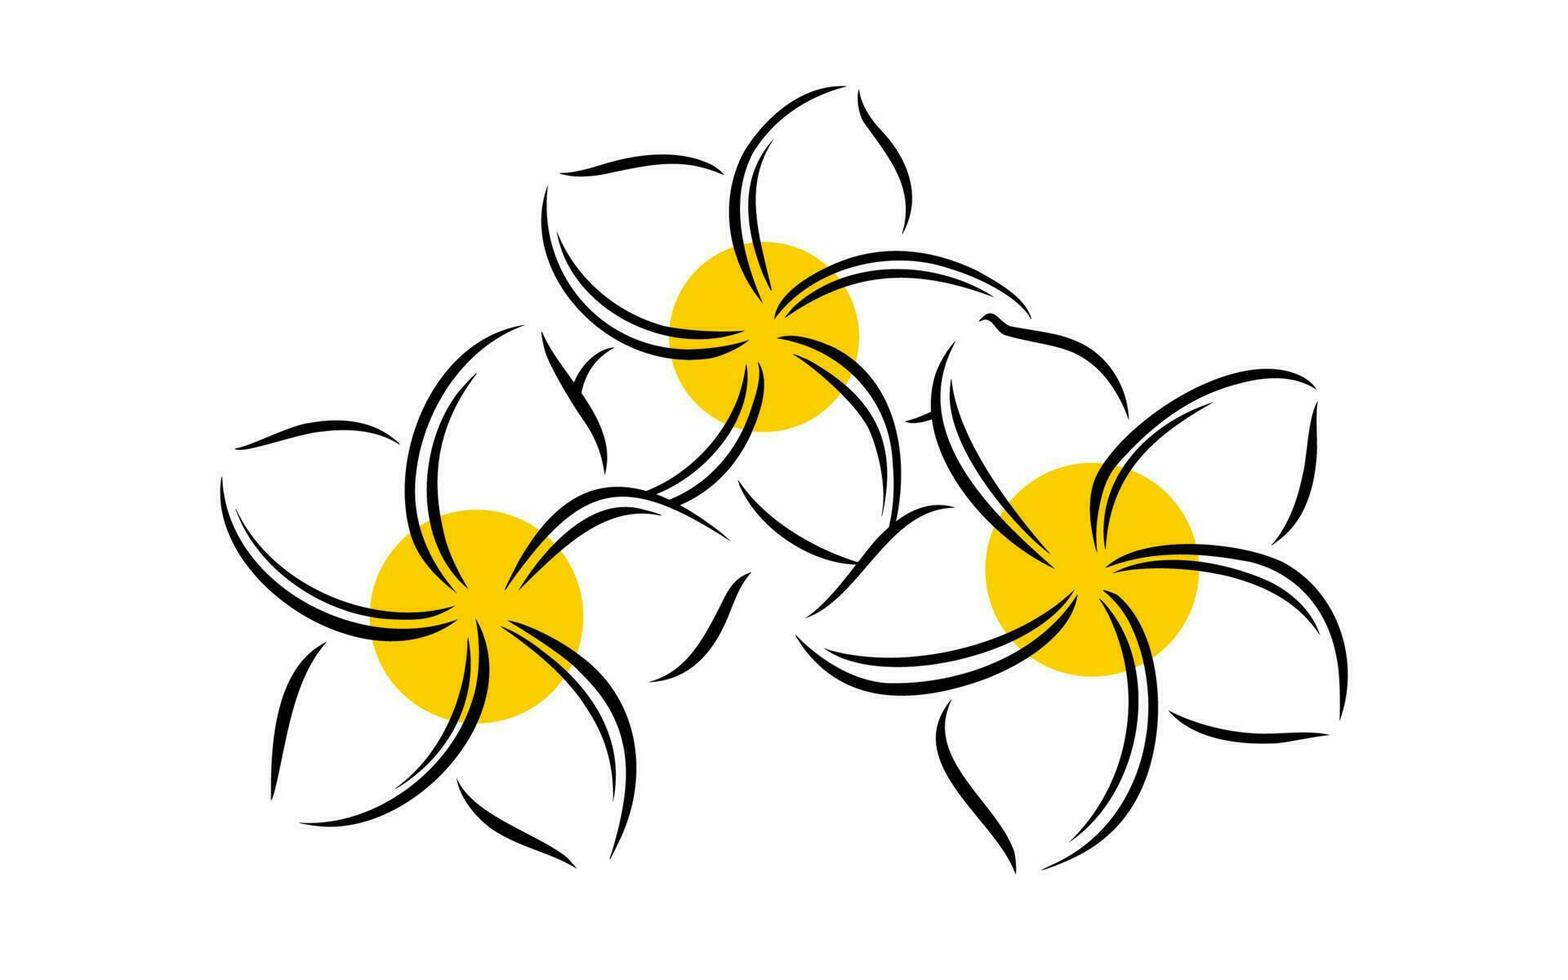 Frangipani oder Plumeria exotisch Sommer- Blume. graviert Frangipani isoliert im Weiß Hintergrund. Vektor Illustration